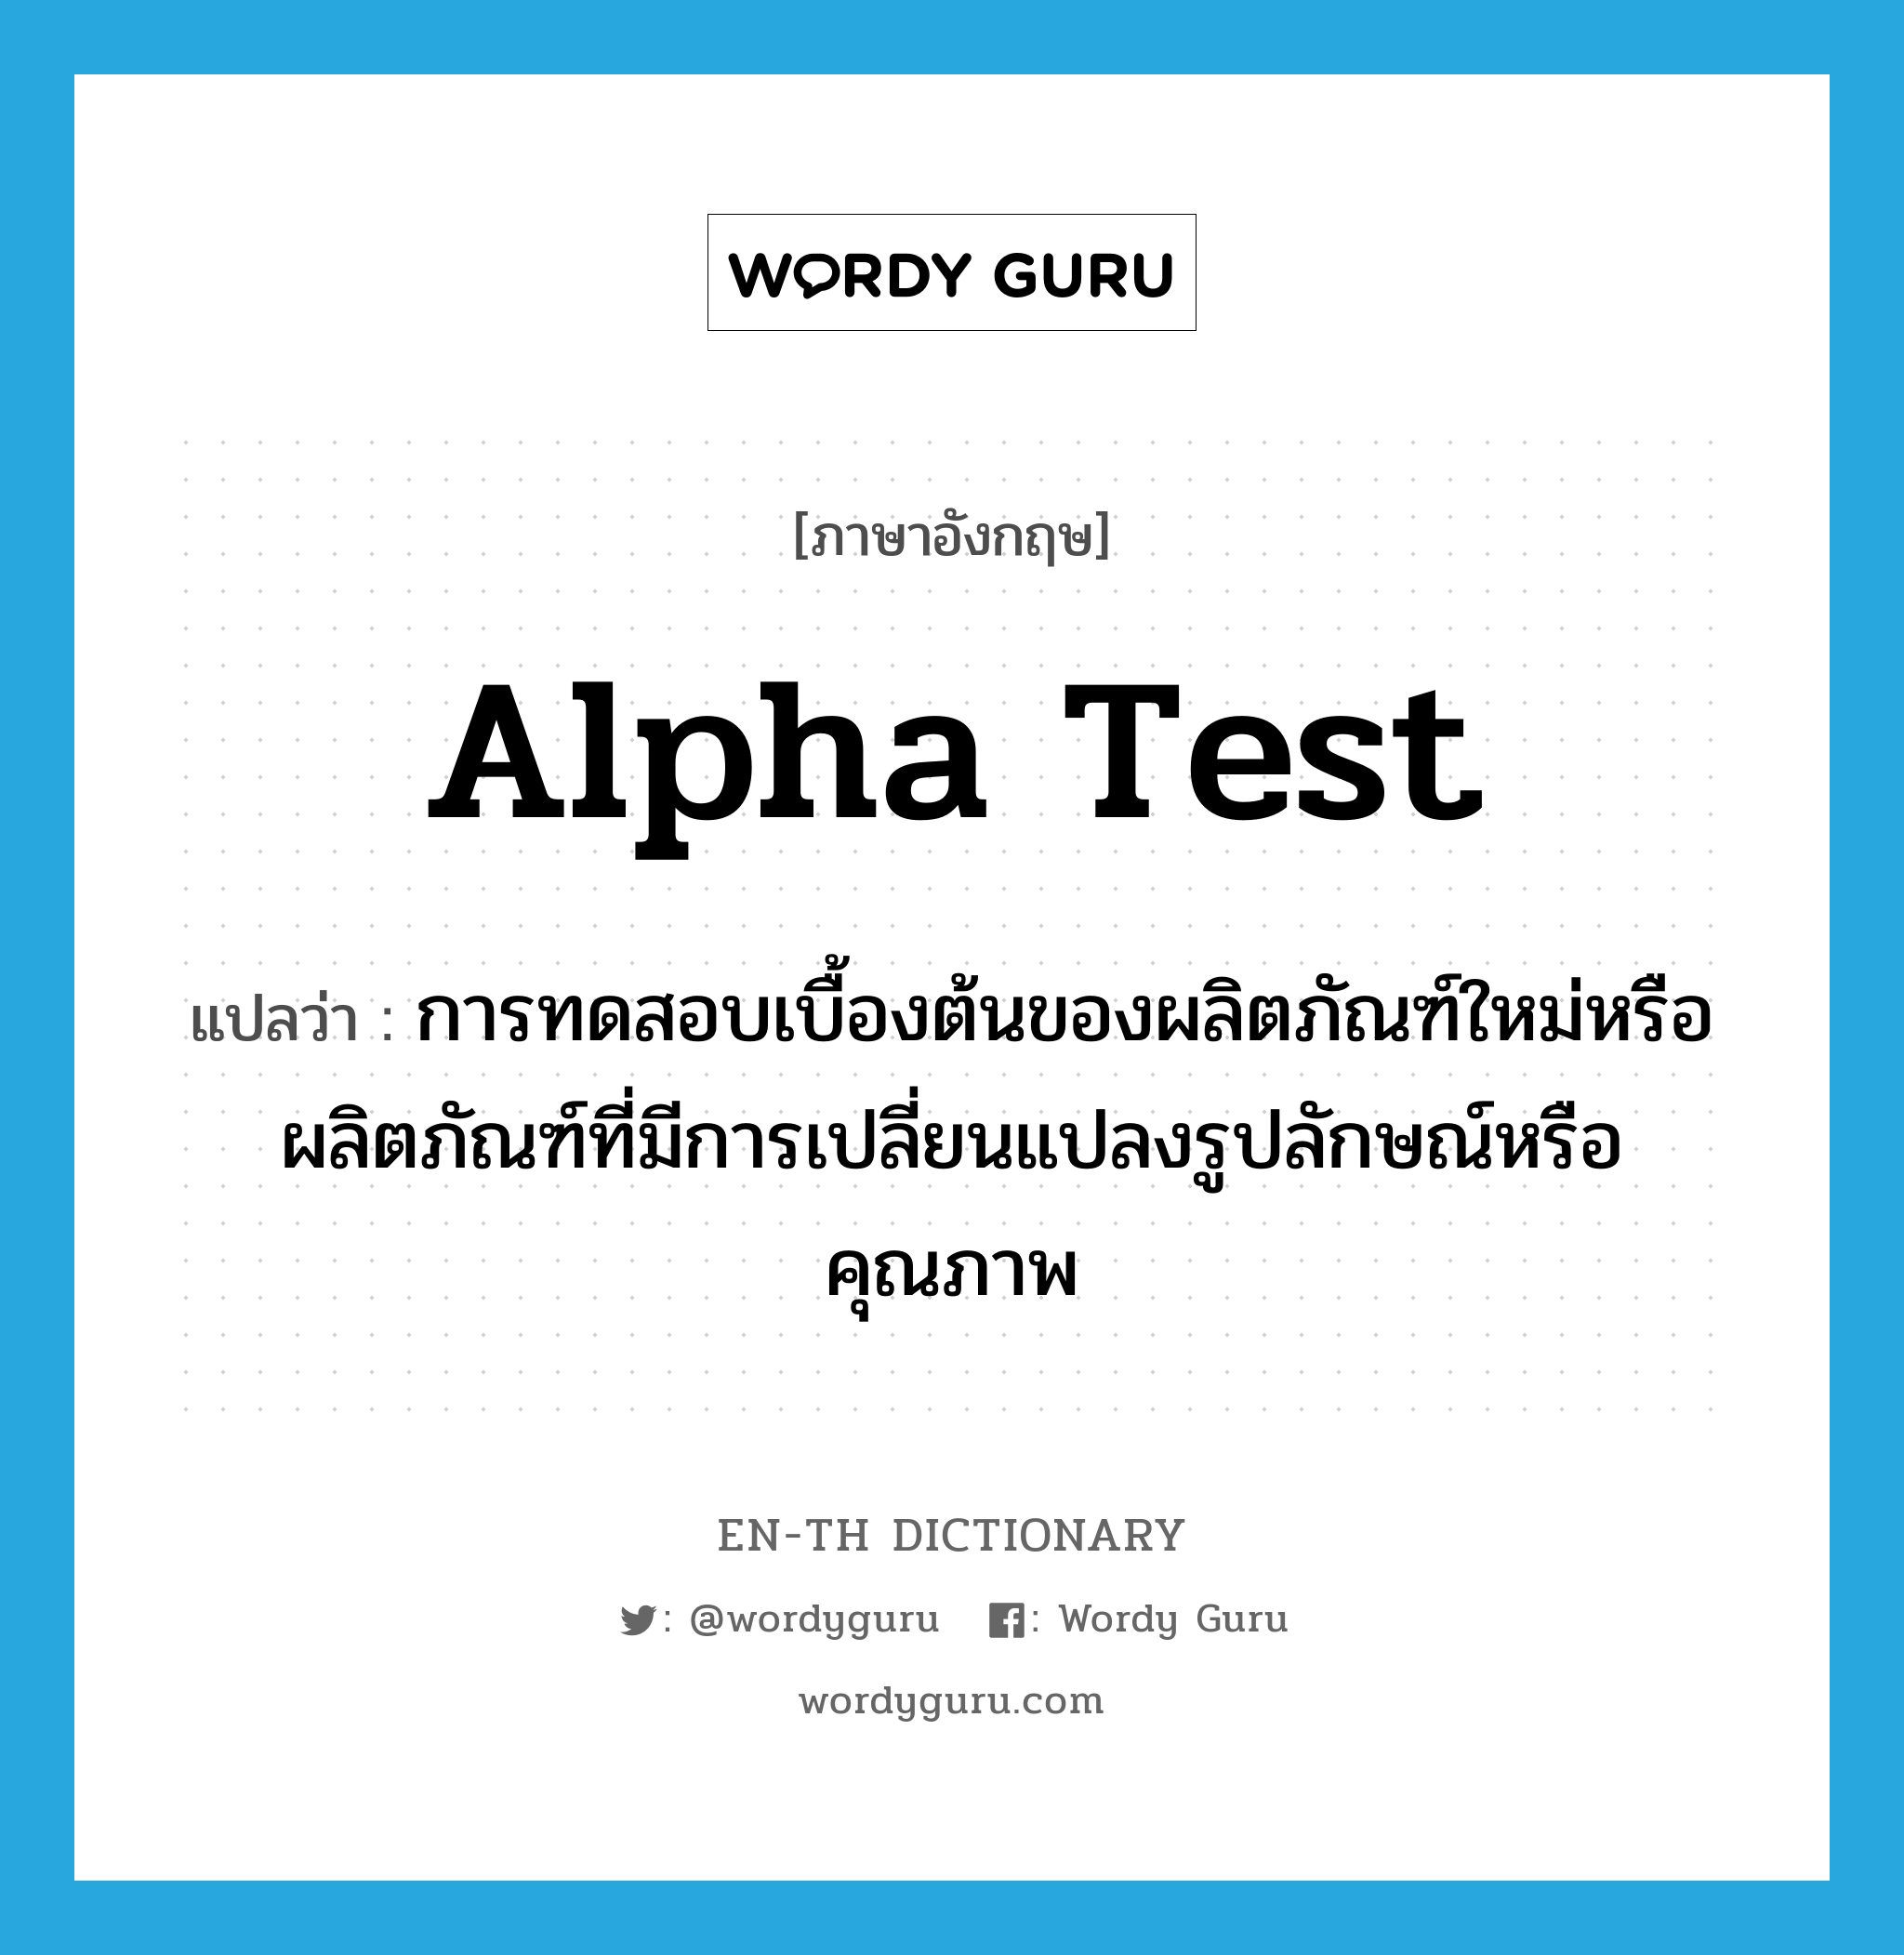 alpha test แปลว่า?, คำศัพท์ภาษาอังกฤษ alpha test แปลว่า การทดสอบเบื้องต้นของผลิตภัณฑ์ใหม่หรือผลิตภัณฑ์ที่มีการเปลี่ยนแปลงรูปลักษณ์หรือคุณภาพ ประเภท N หมวด N